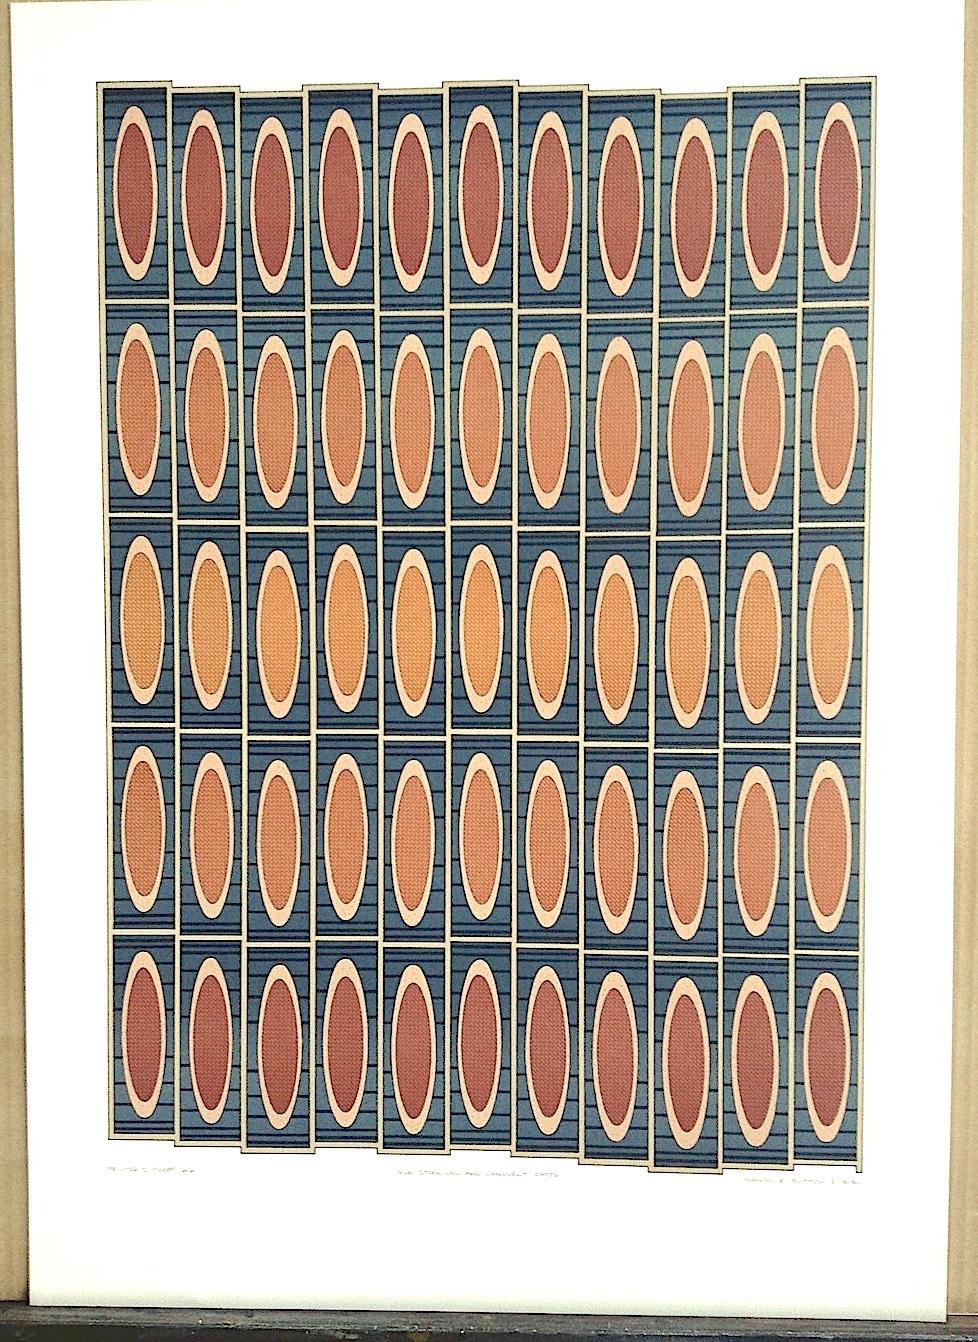 Silk Stockings and Candlelit Cafes ist eine originale handgezeichnete Lithographie von Sharon E. Sutton, gedruckt im Handlithographie-Verfahren auf 100% säurefreiem Archivpapier. Eine architektonisch inspirierte Komposition, die aus einem